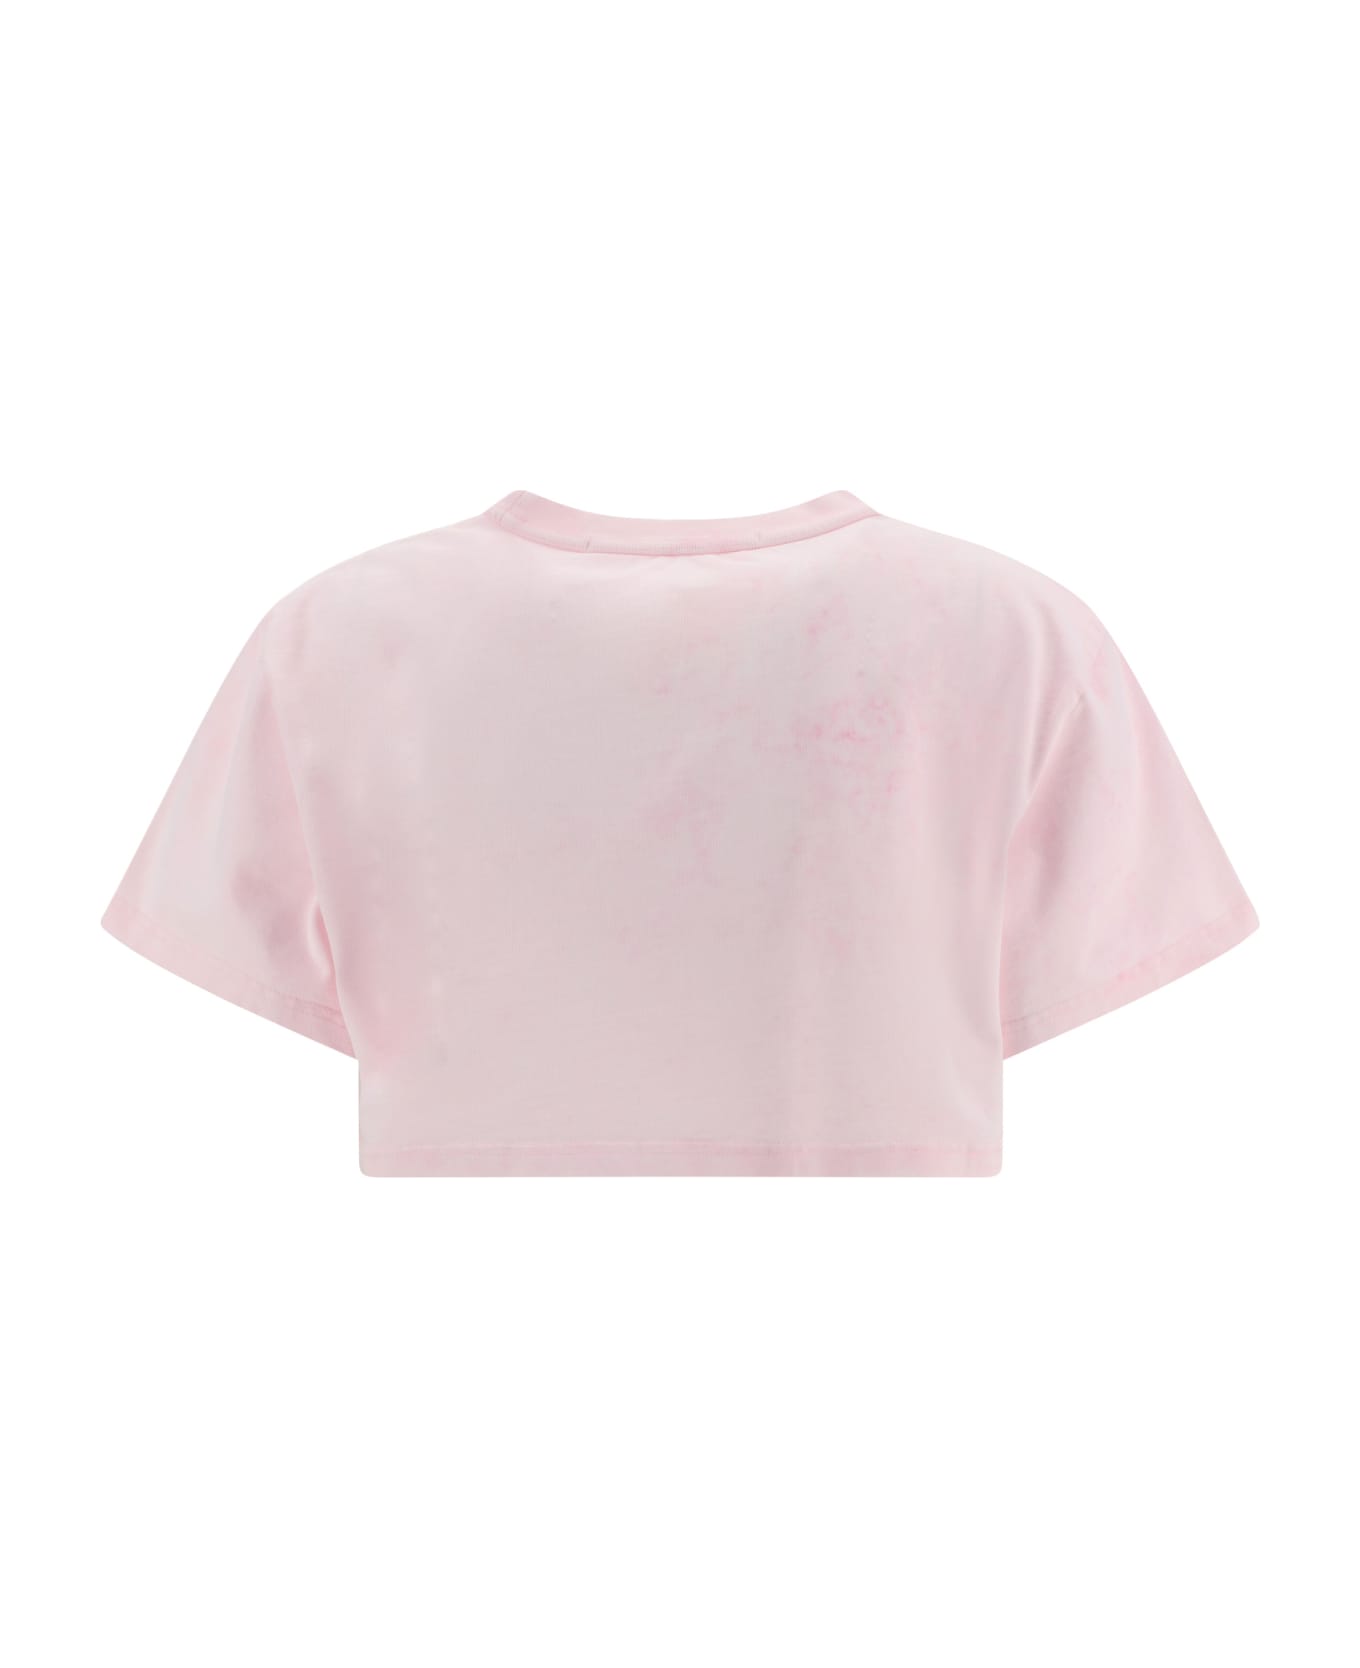 Alexander Wang T-shirt - Lt Pink Bleach Out